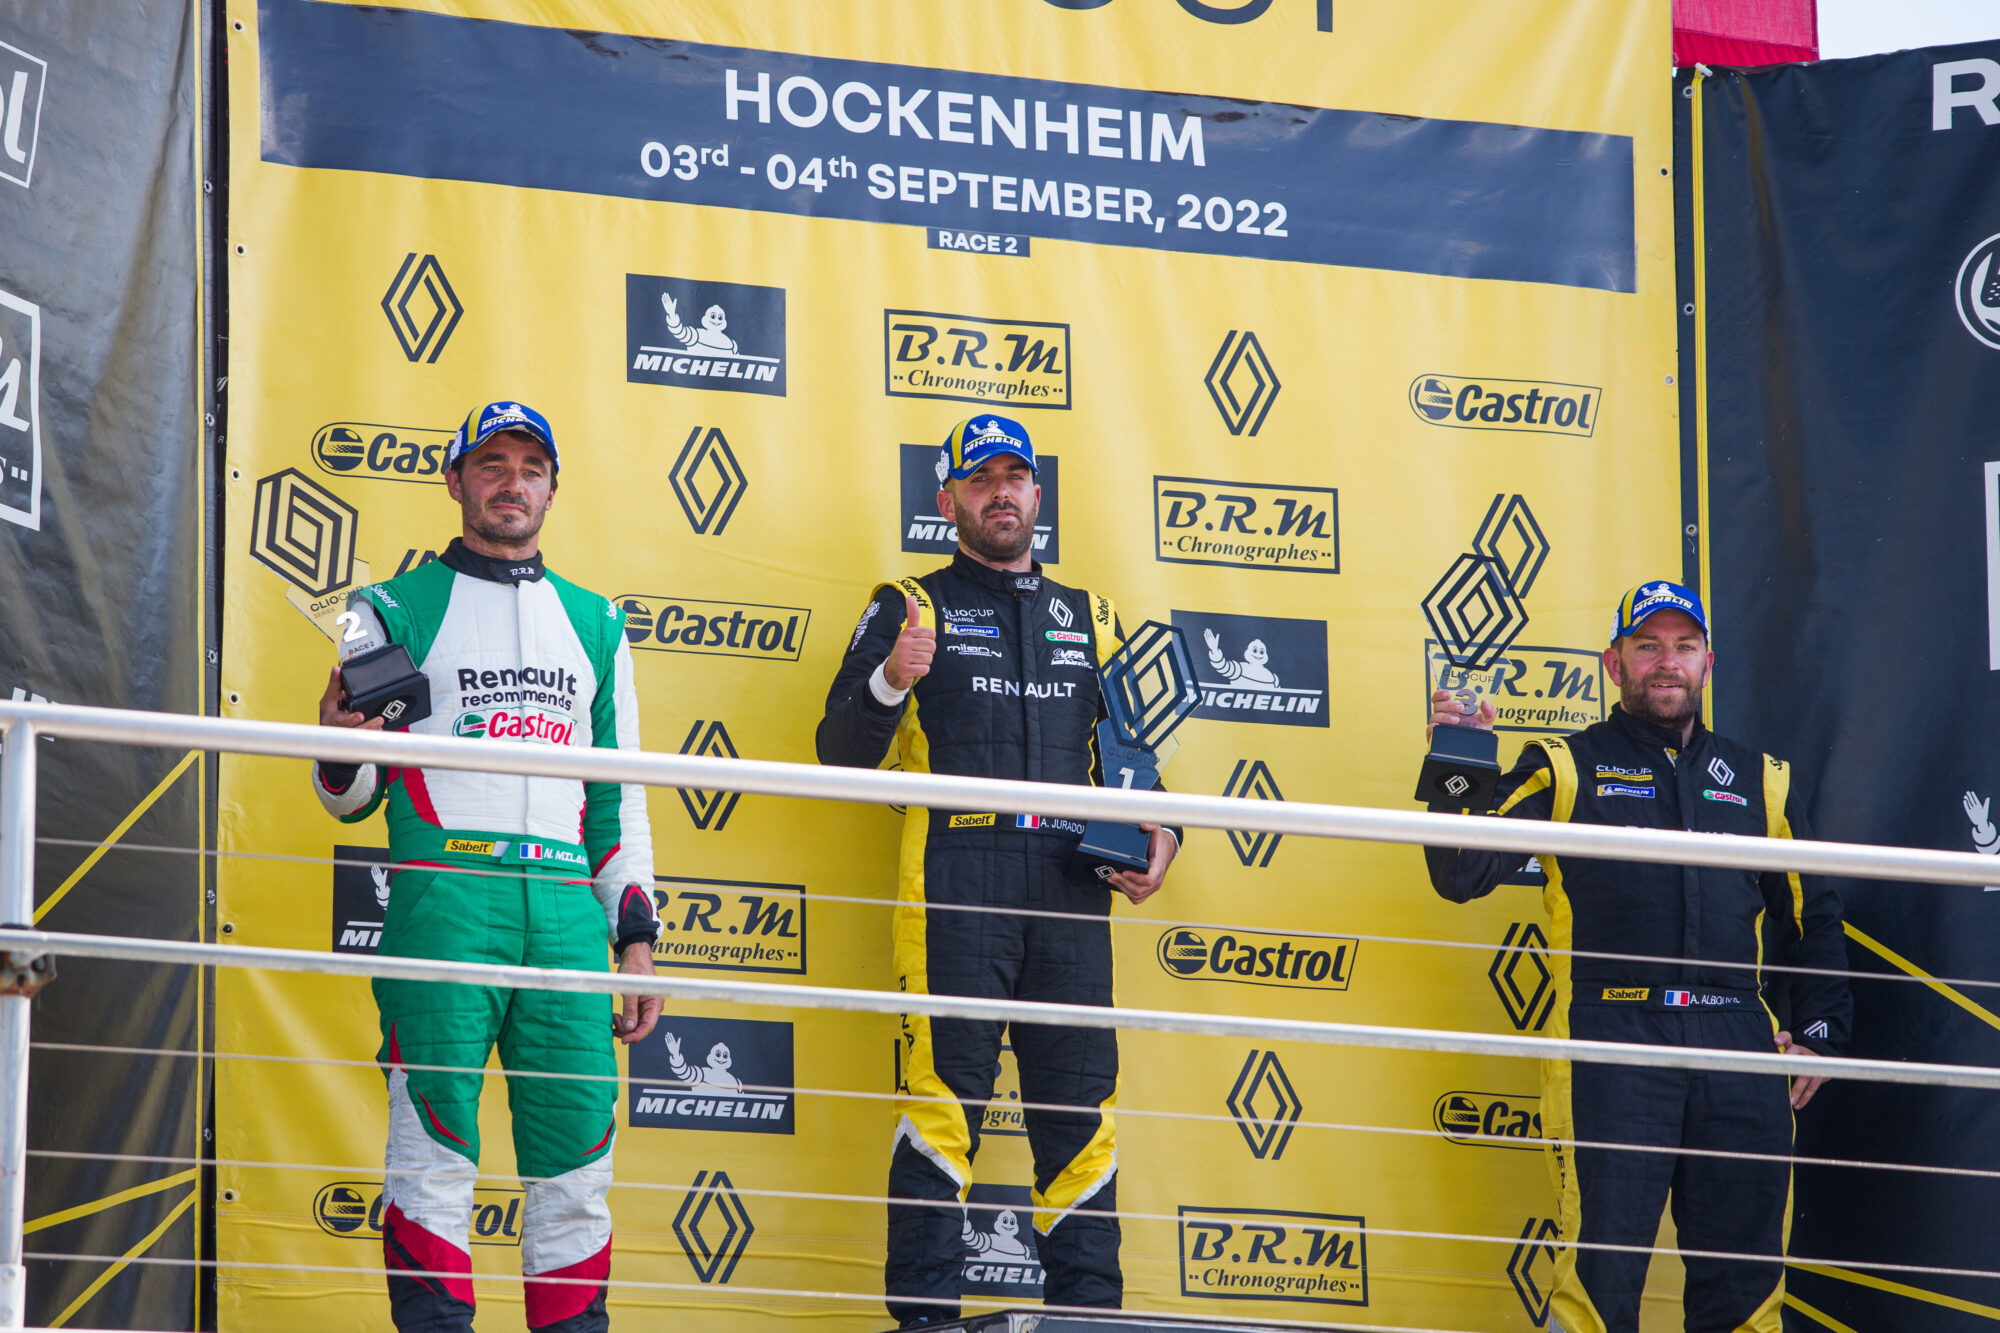 Clio Cup Series - Hockenheim 2022 - Race 2 podium